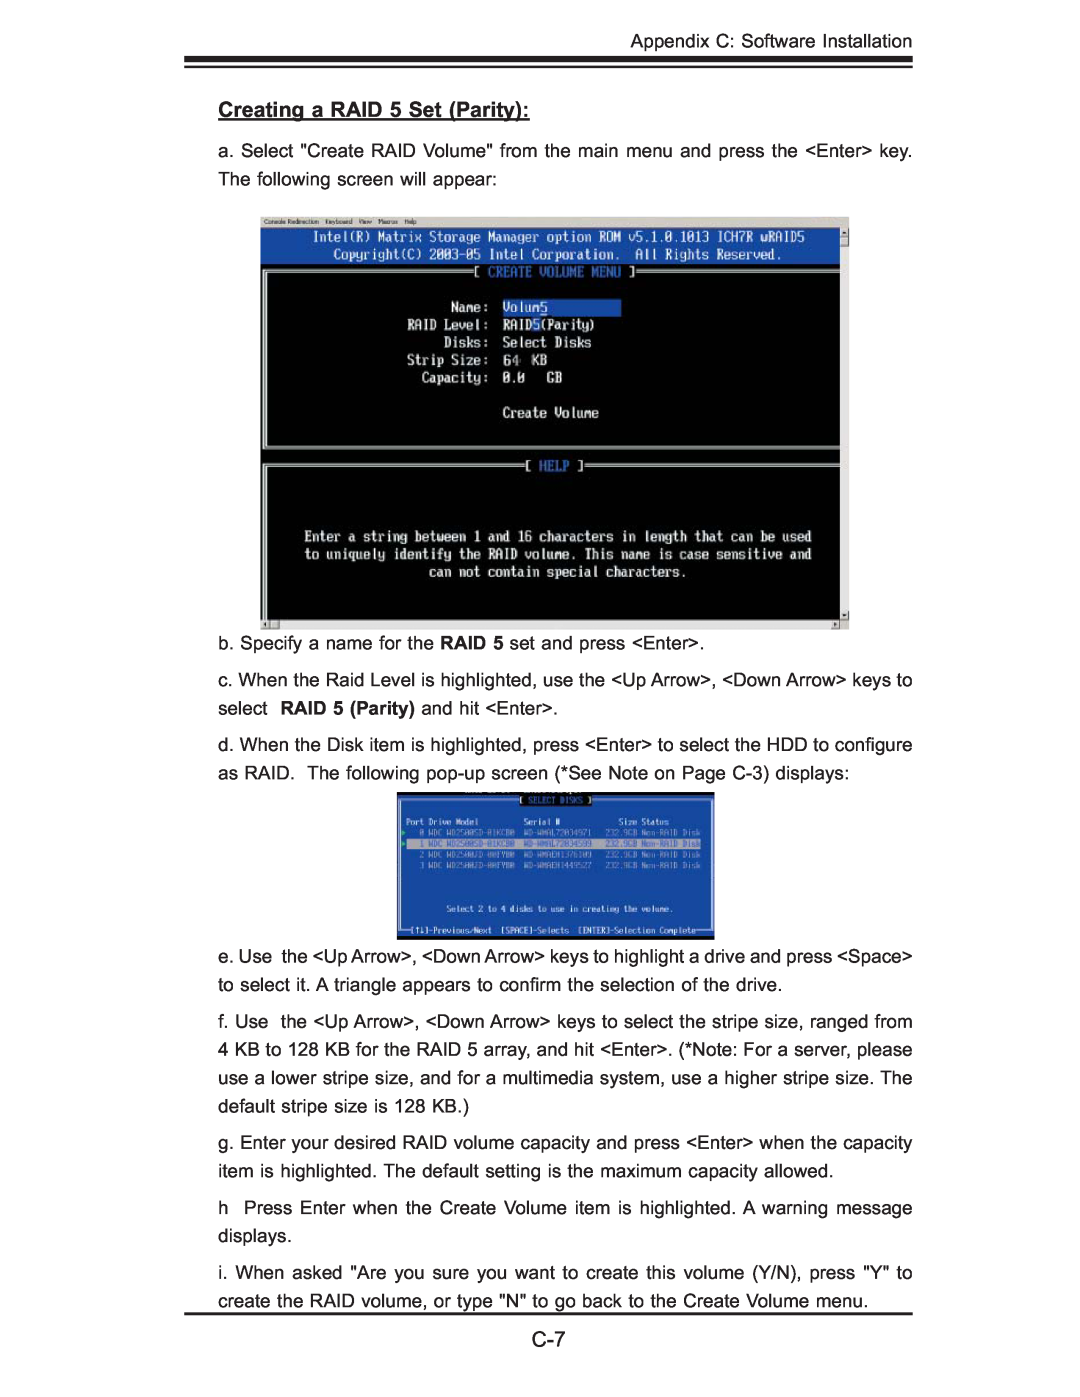 SUPER MICRO Computer 6015B-8+ manual Creating a RAID 5 Set Parity 